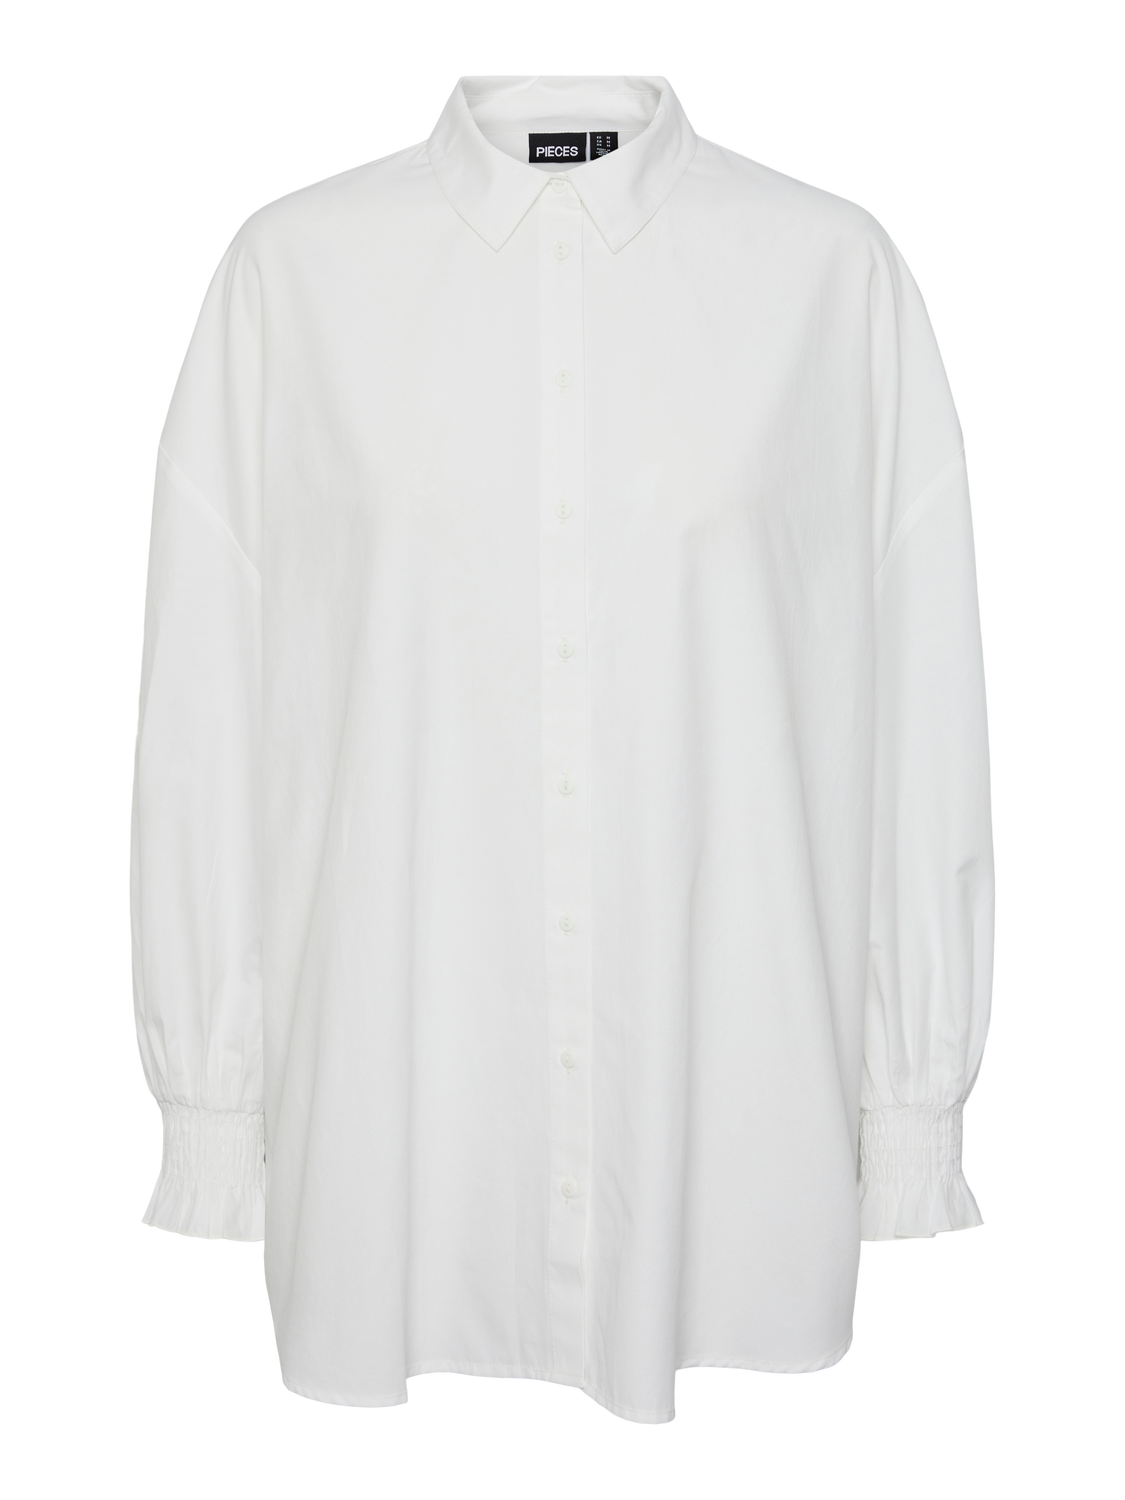 PCALLIE Shirts - Bright White